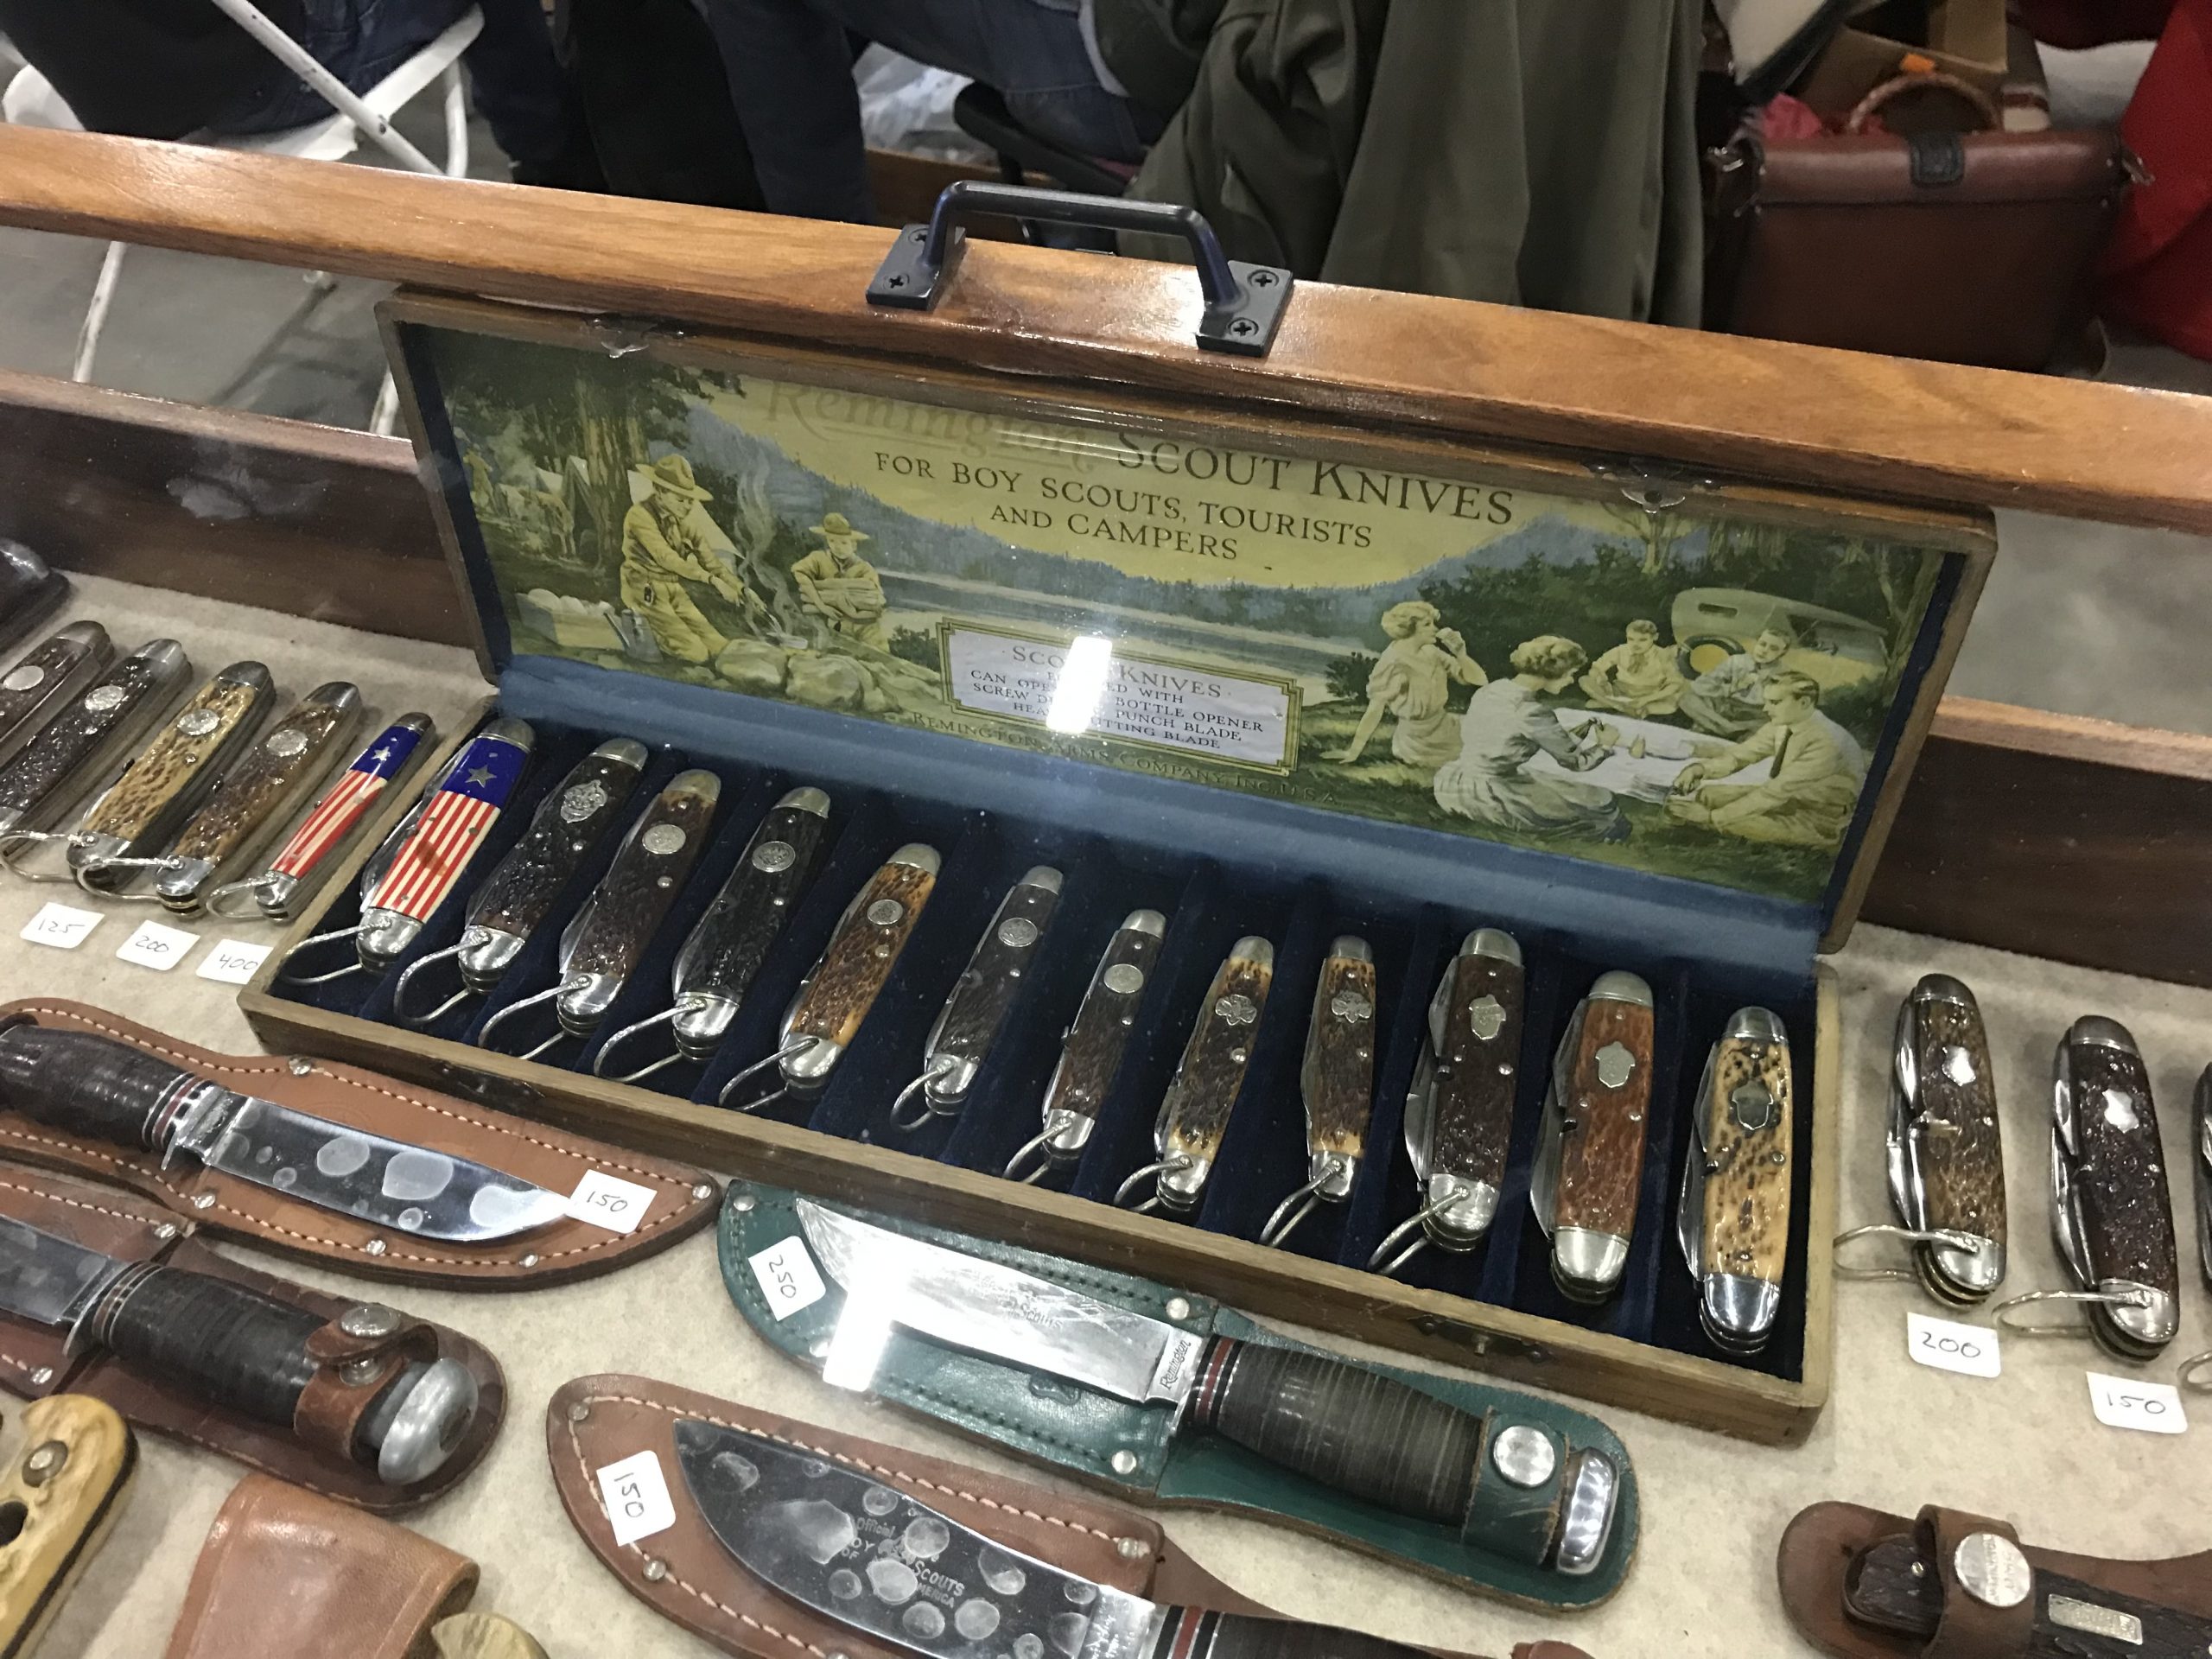 Scout knives at Tulsa gun show